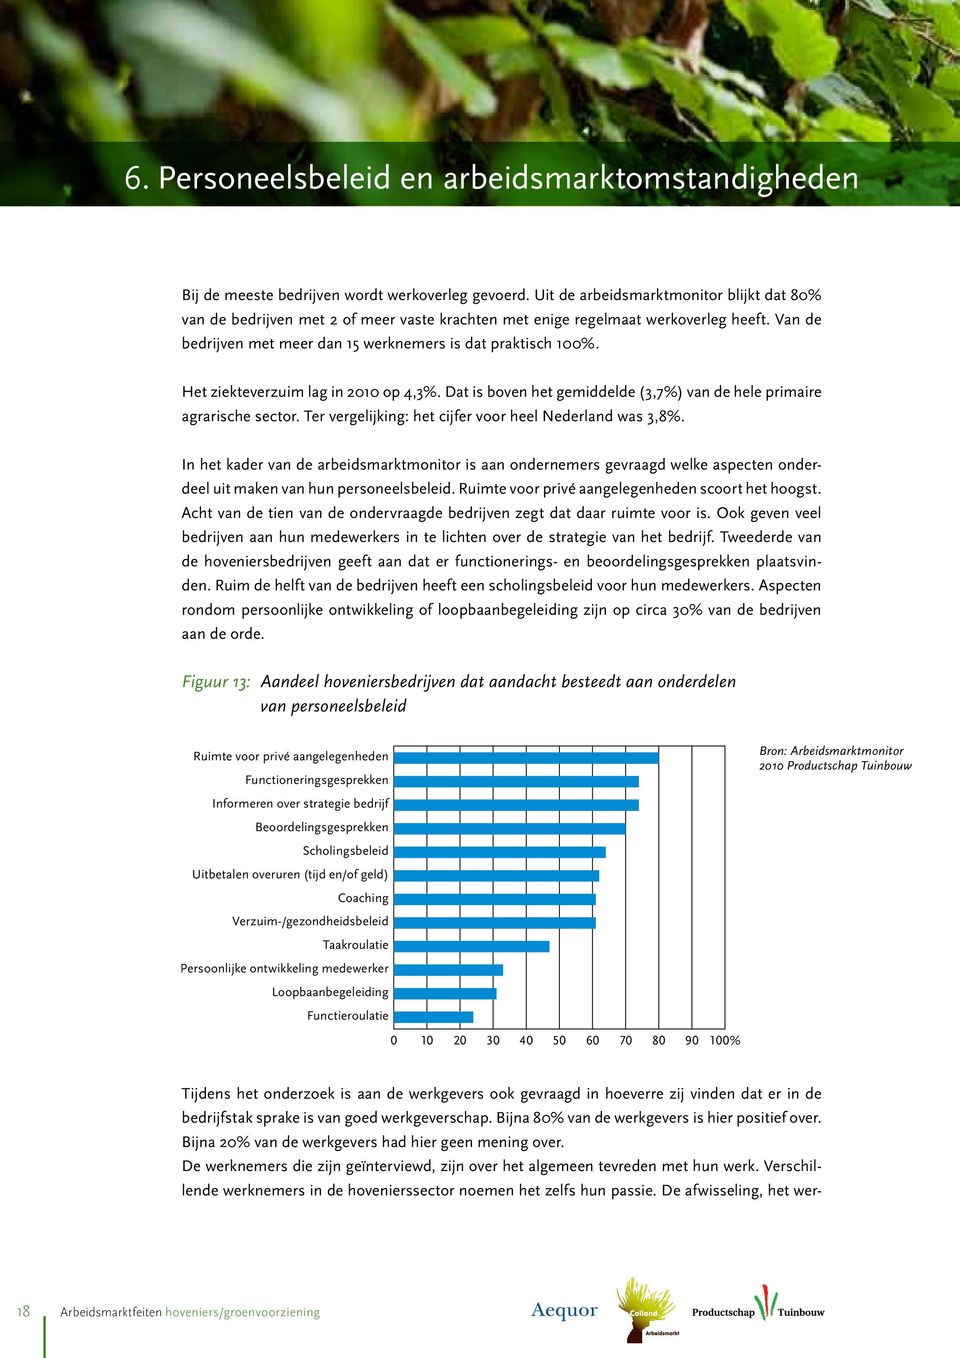 Het ziekteverzuim lag in 2010 op 4,3%. Dat is boven het gemiddelde (3,7%) van de hele primaire agrarische sector. Ter vergelijking: het cijfer voor heel Nederland was 3,8%.